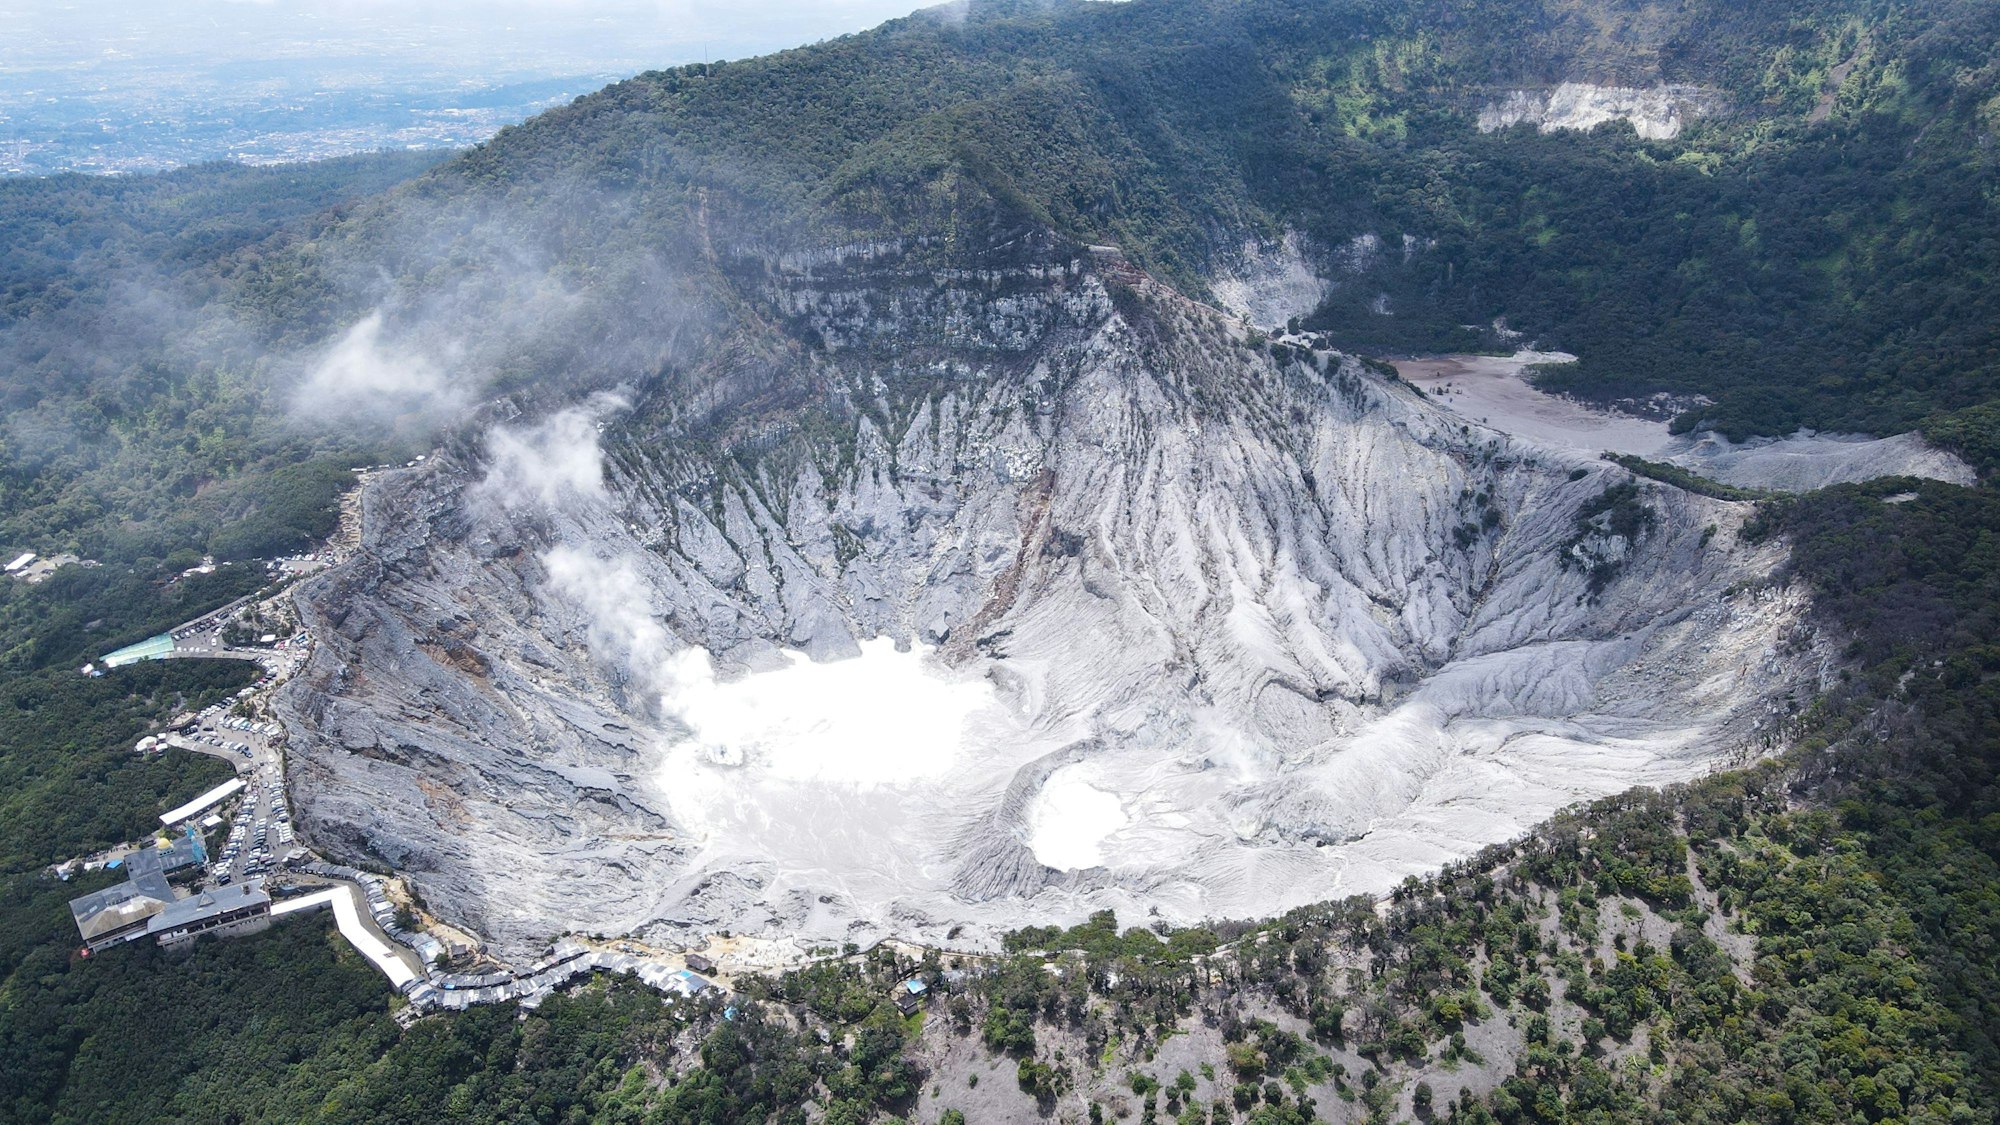 Indonesien, Bandung: Blick auf den Krater des Tangkuban Perahu, eines Vulkans